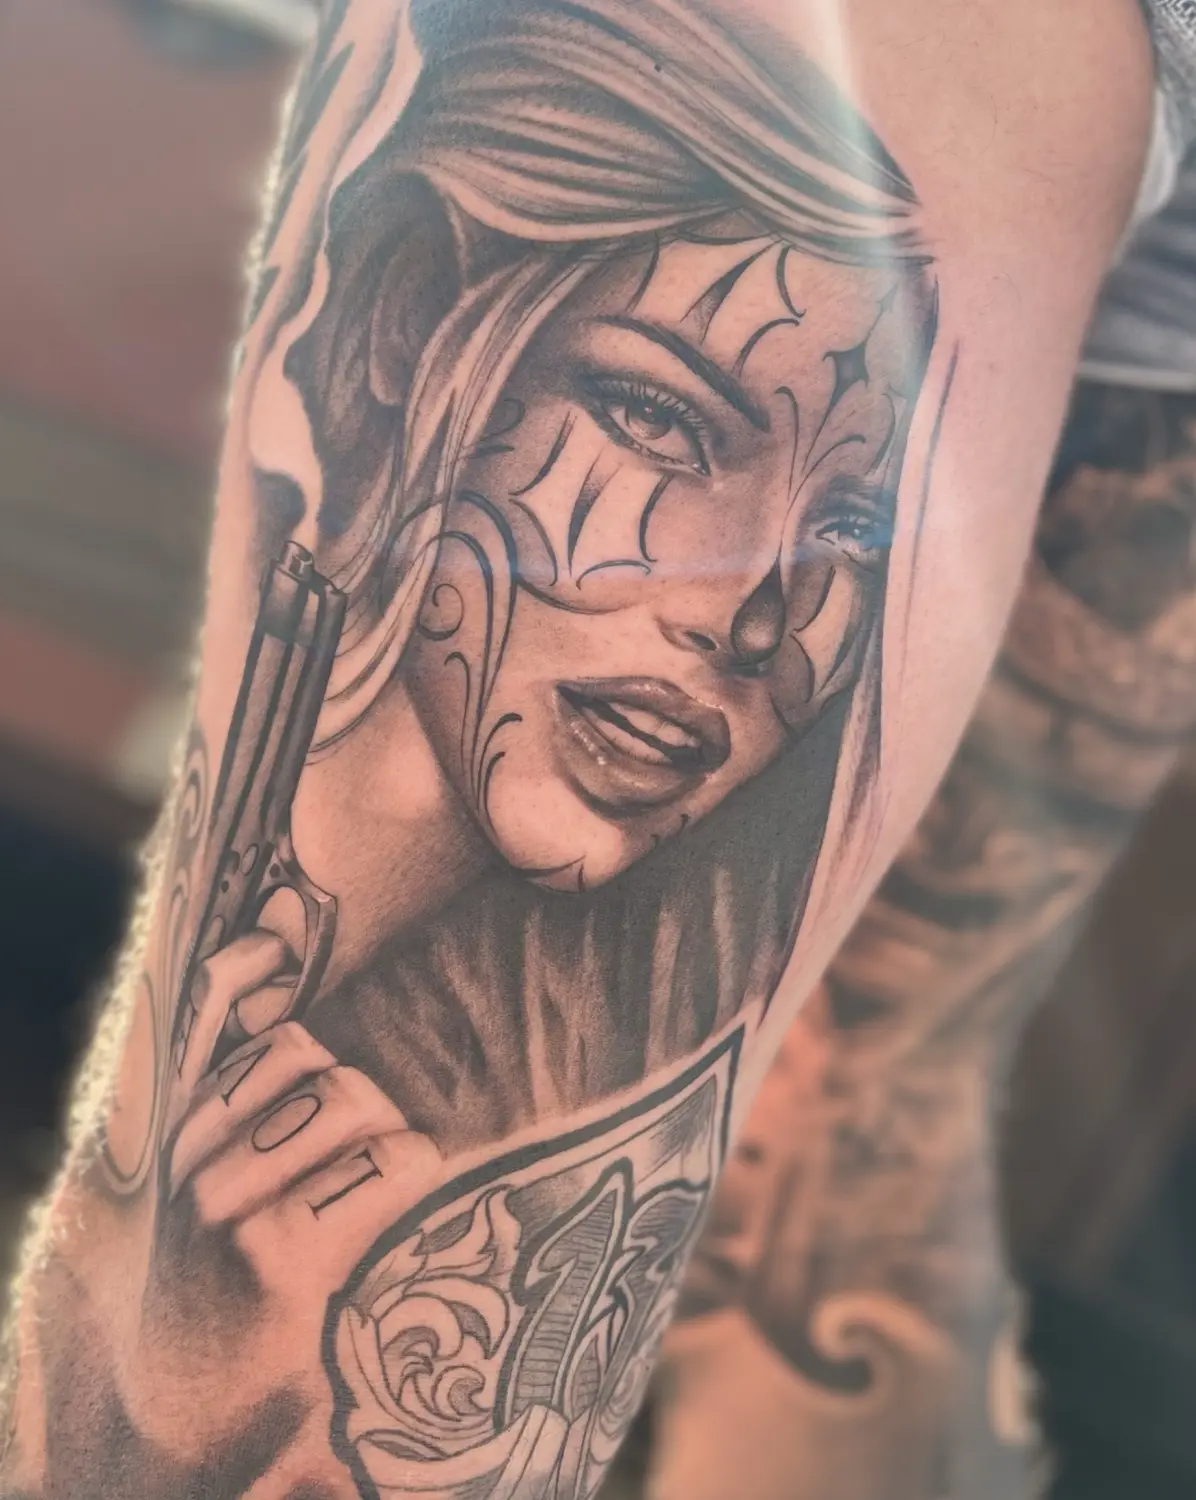 Skin City Tattoo & Piercing Tattoo auf der Hand